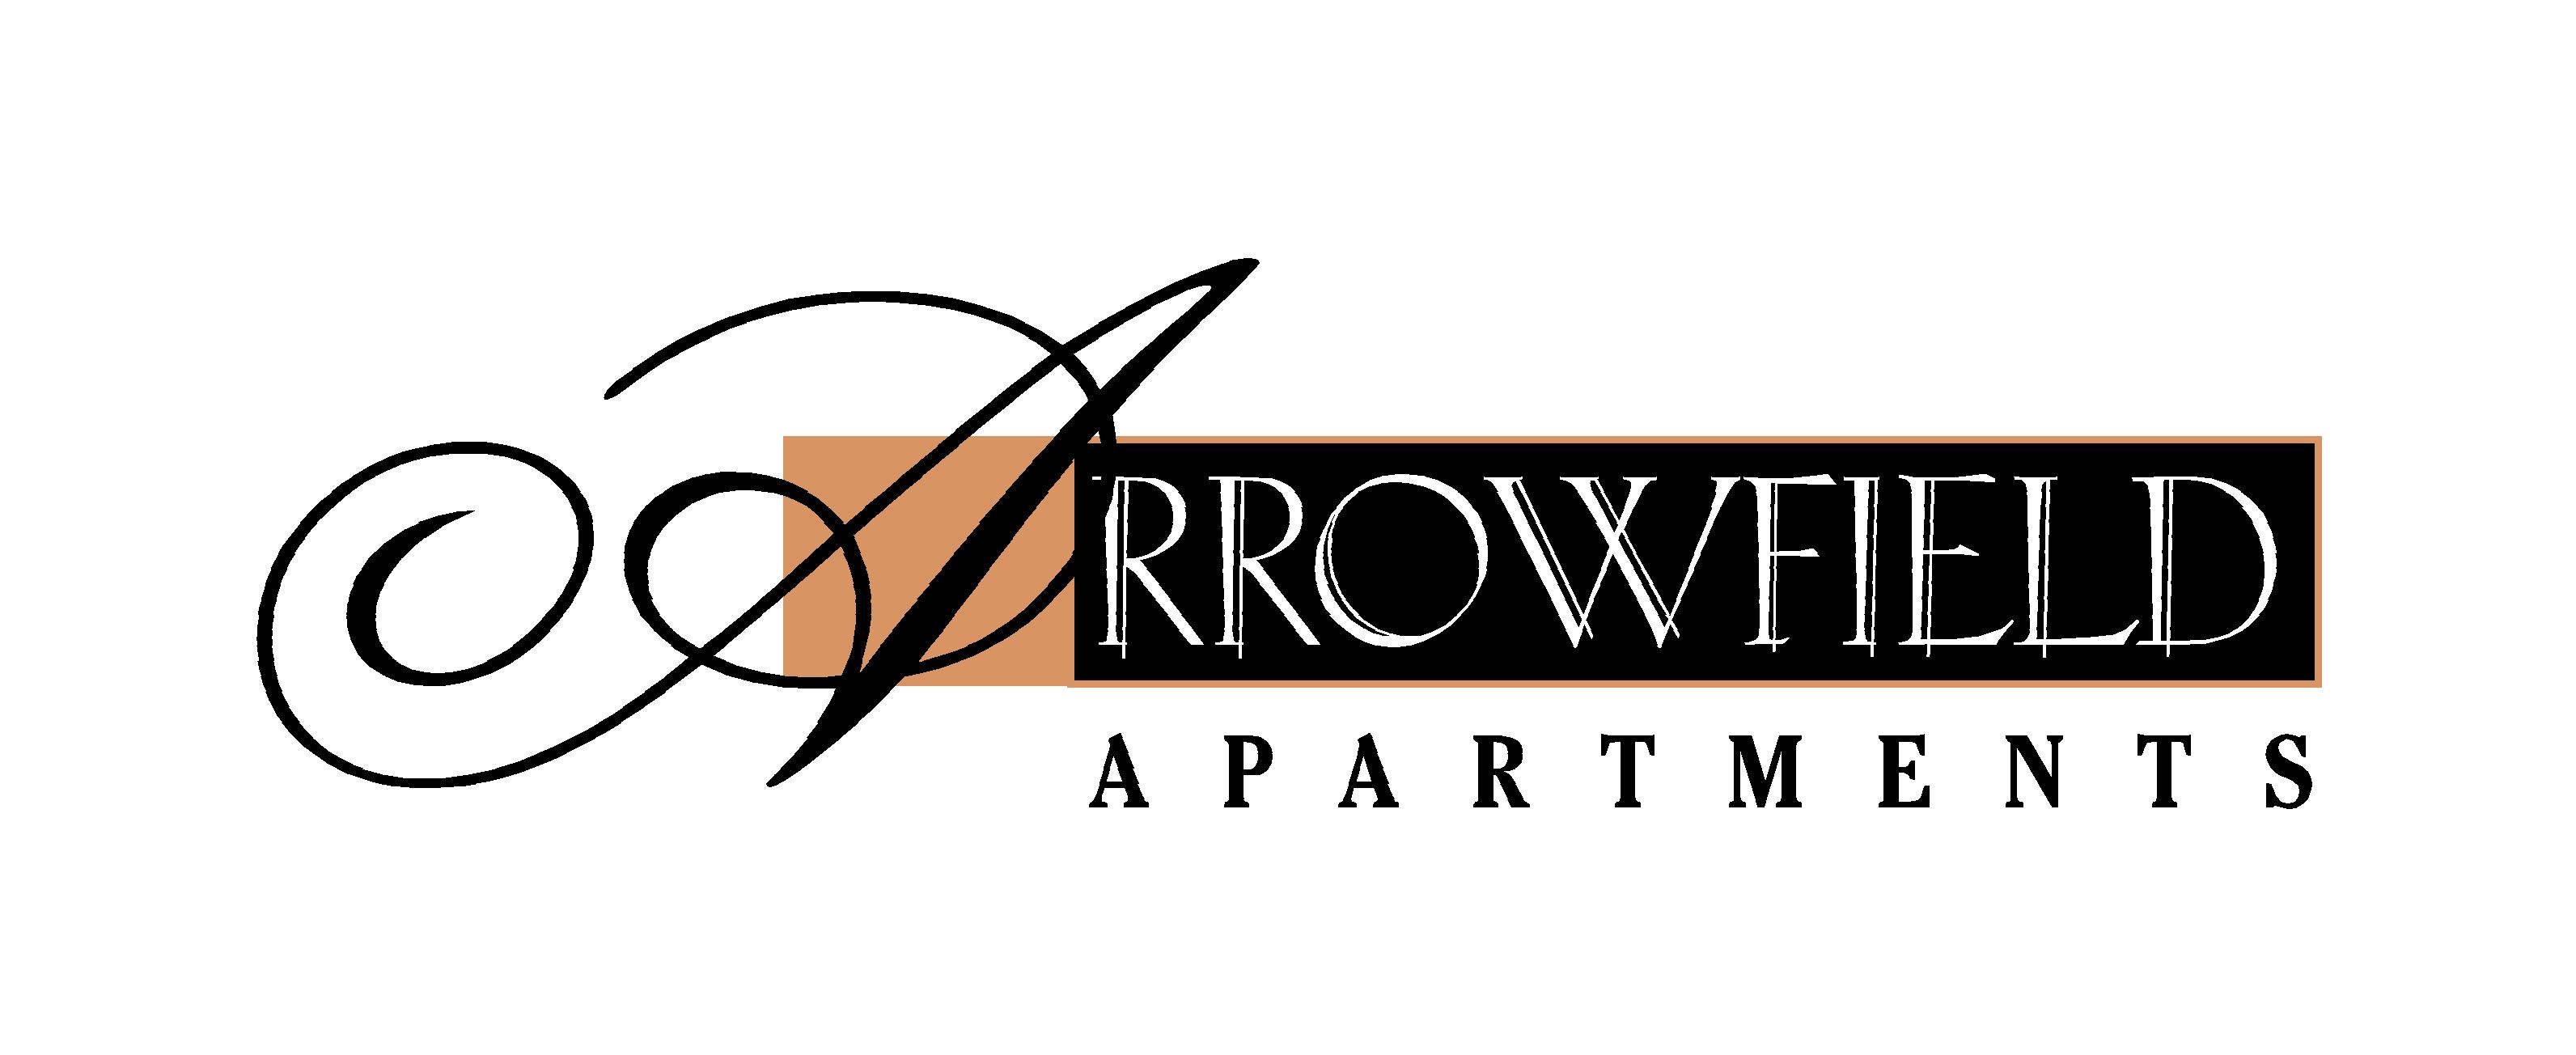 arrowfield logo